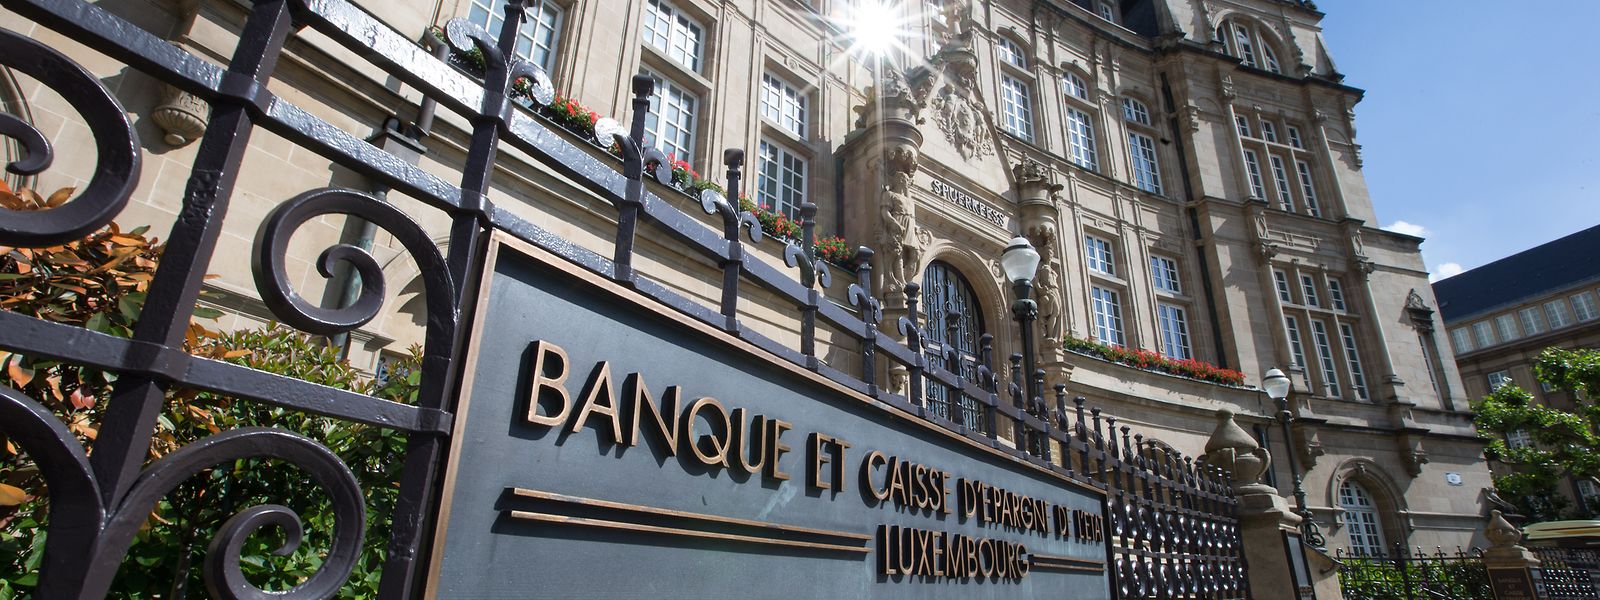 Die Coronaflaute 2020 hat die Banque et Caisse d’Epargne de l’Etat im letzten Jahr erfolgreich überwunden.